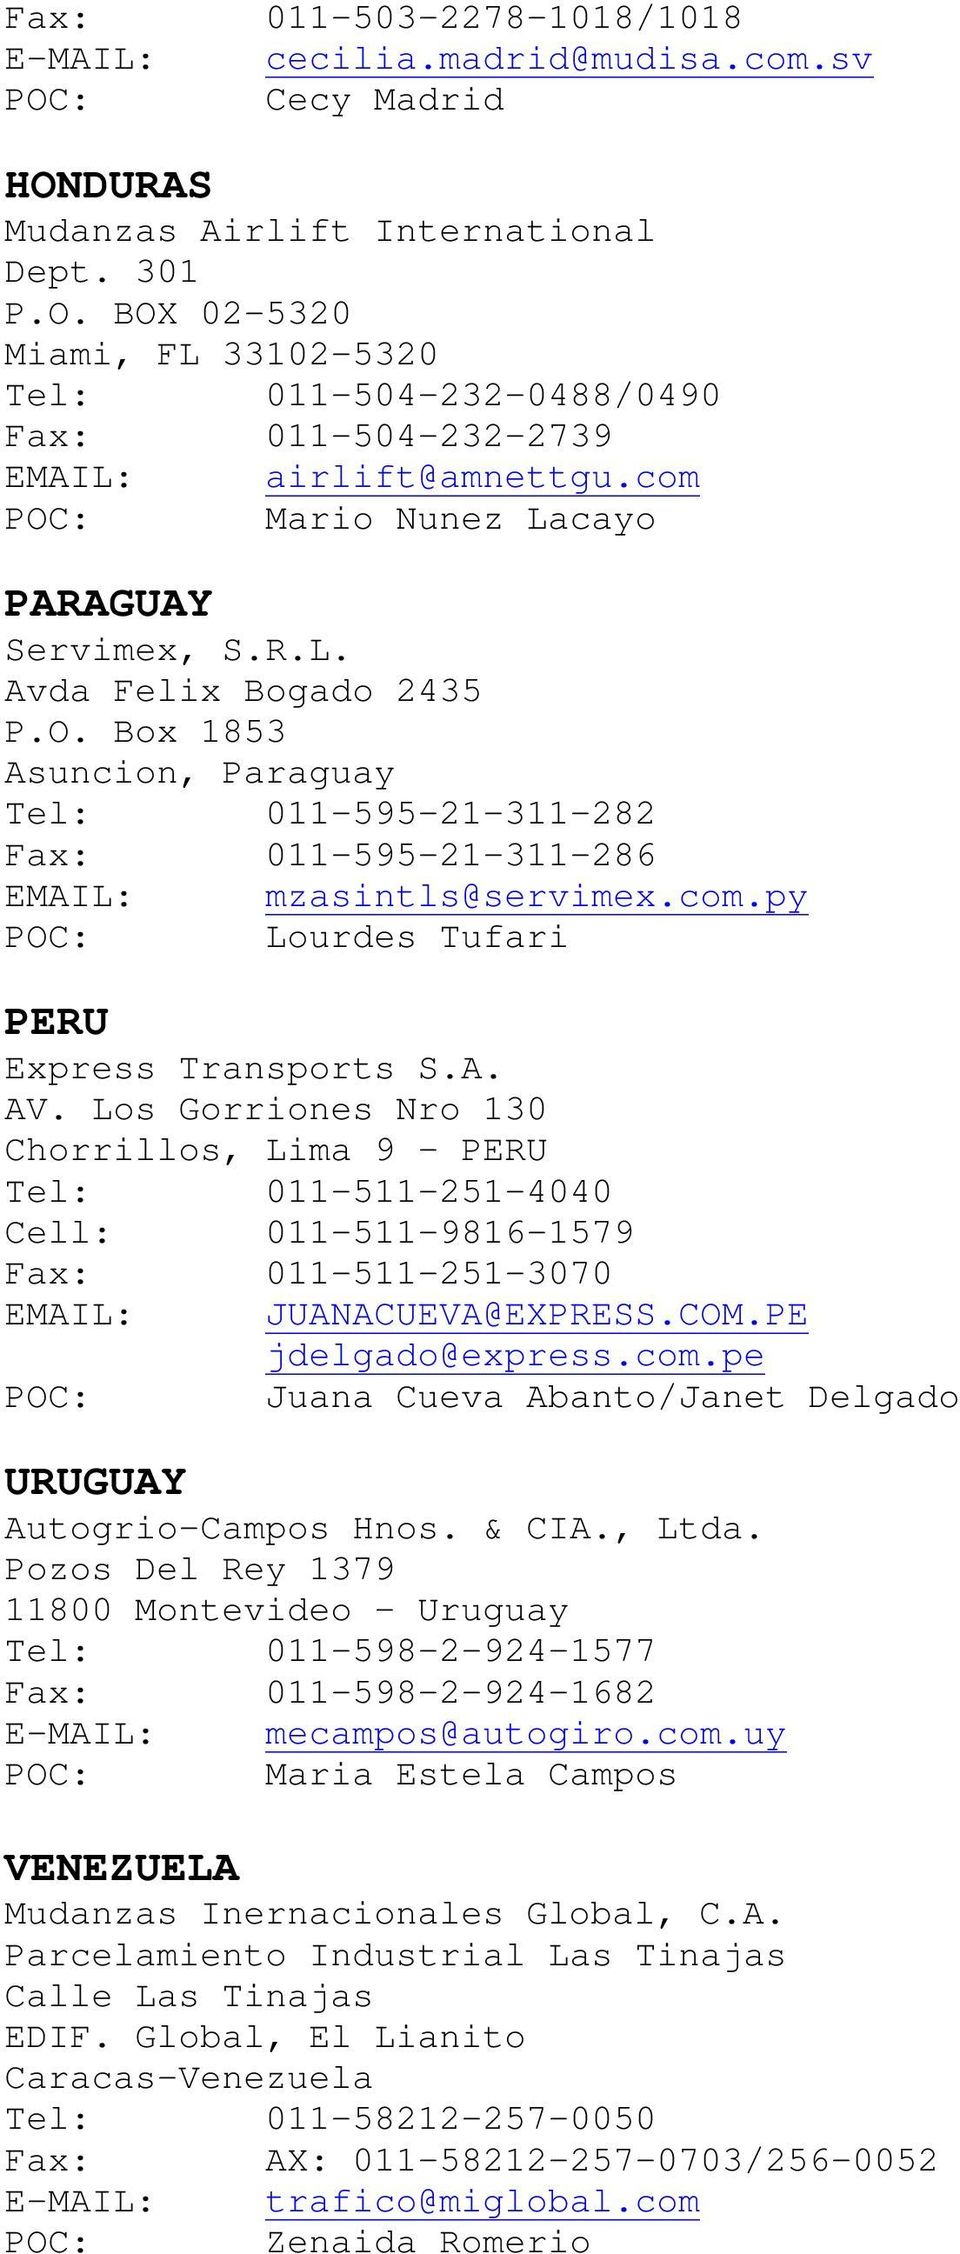 A. AV. Los Gorriones Nro 130 Chorrillos, Lima 9 - PERU Tel: 011-511-251-4040 Cell: 011-511-9816-1579 Fax: 011-511-251-3070 EMAIL: JUANACUEVA@EXPRESS.COM.PE jdelgado@express.com.